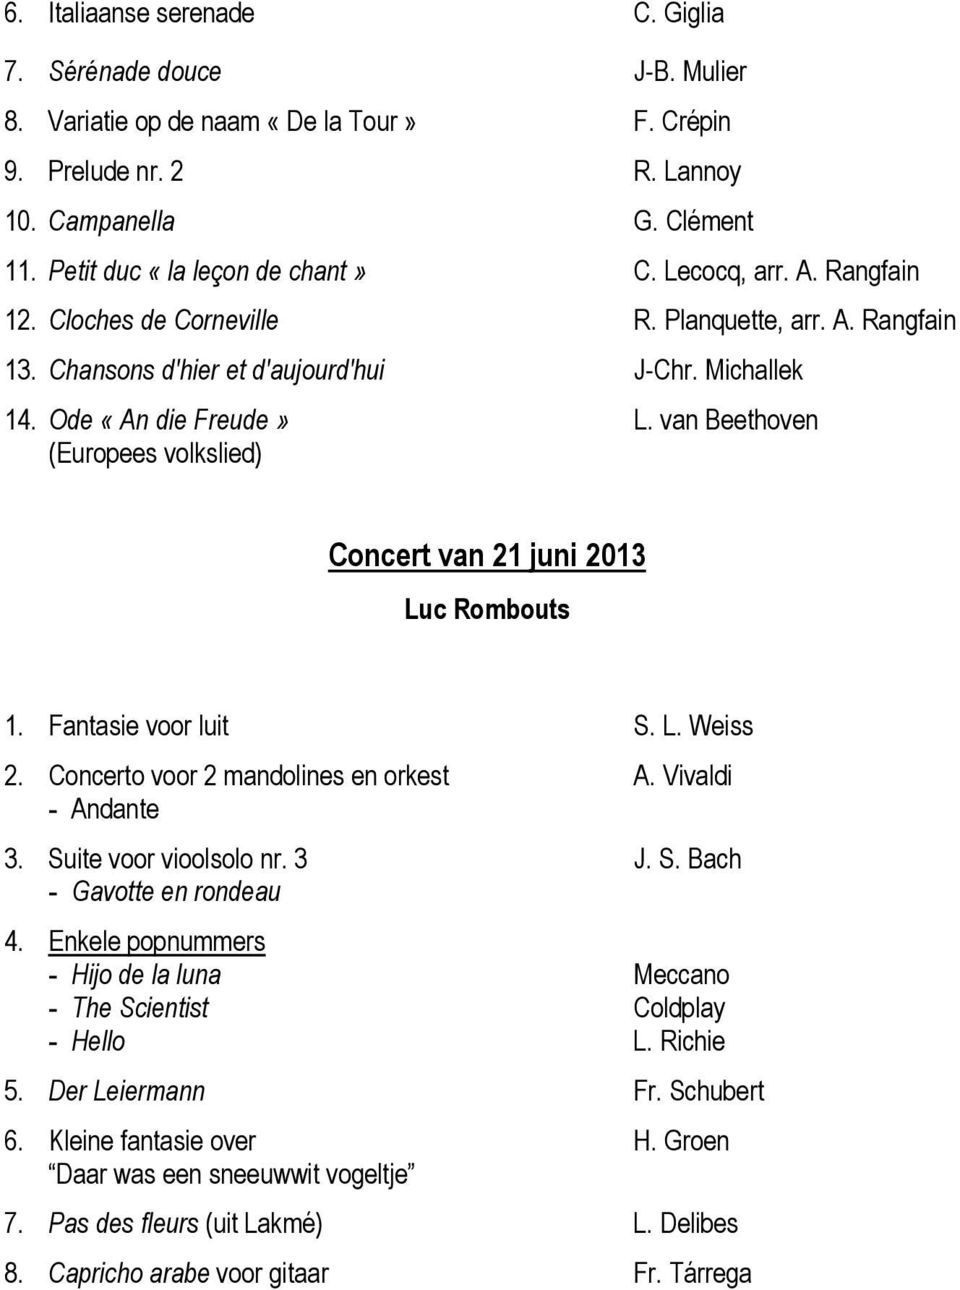 van Beethoven (Europees volkslied) Concert van 21 juni 2013 Luc Rombouts 1. Fantasie voor luit S. L. Weiss 2. Concerto voor 2 mandolines en orkest A. Vivaldi - Andante 3. Suite voor vioolsolo nr. 3 J.